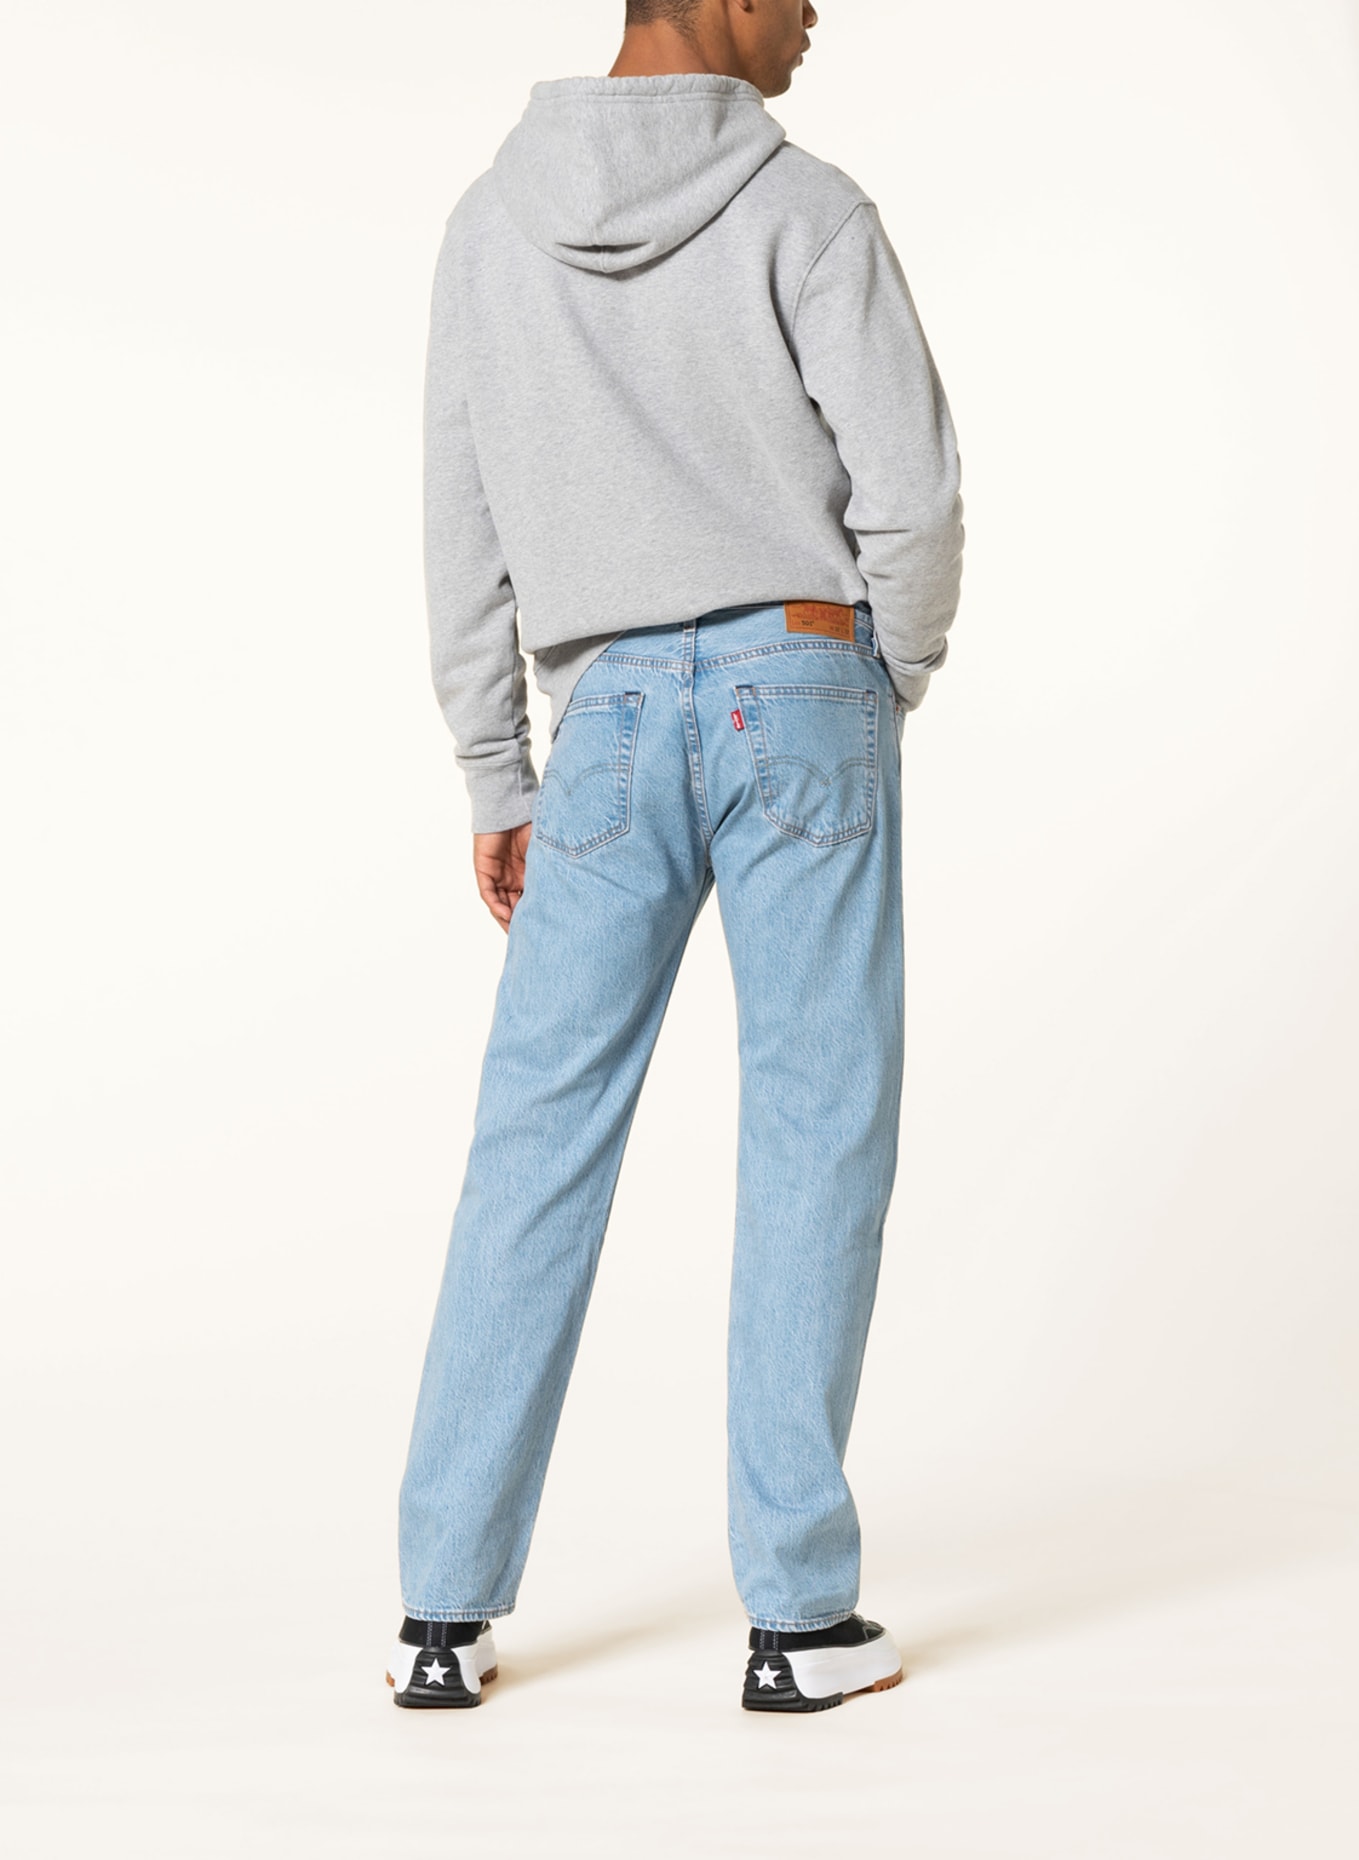 Levi's® Jeans 501 regular fit, Color: 86 Med Indigo - Flat Finish (Image 3)